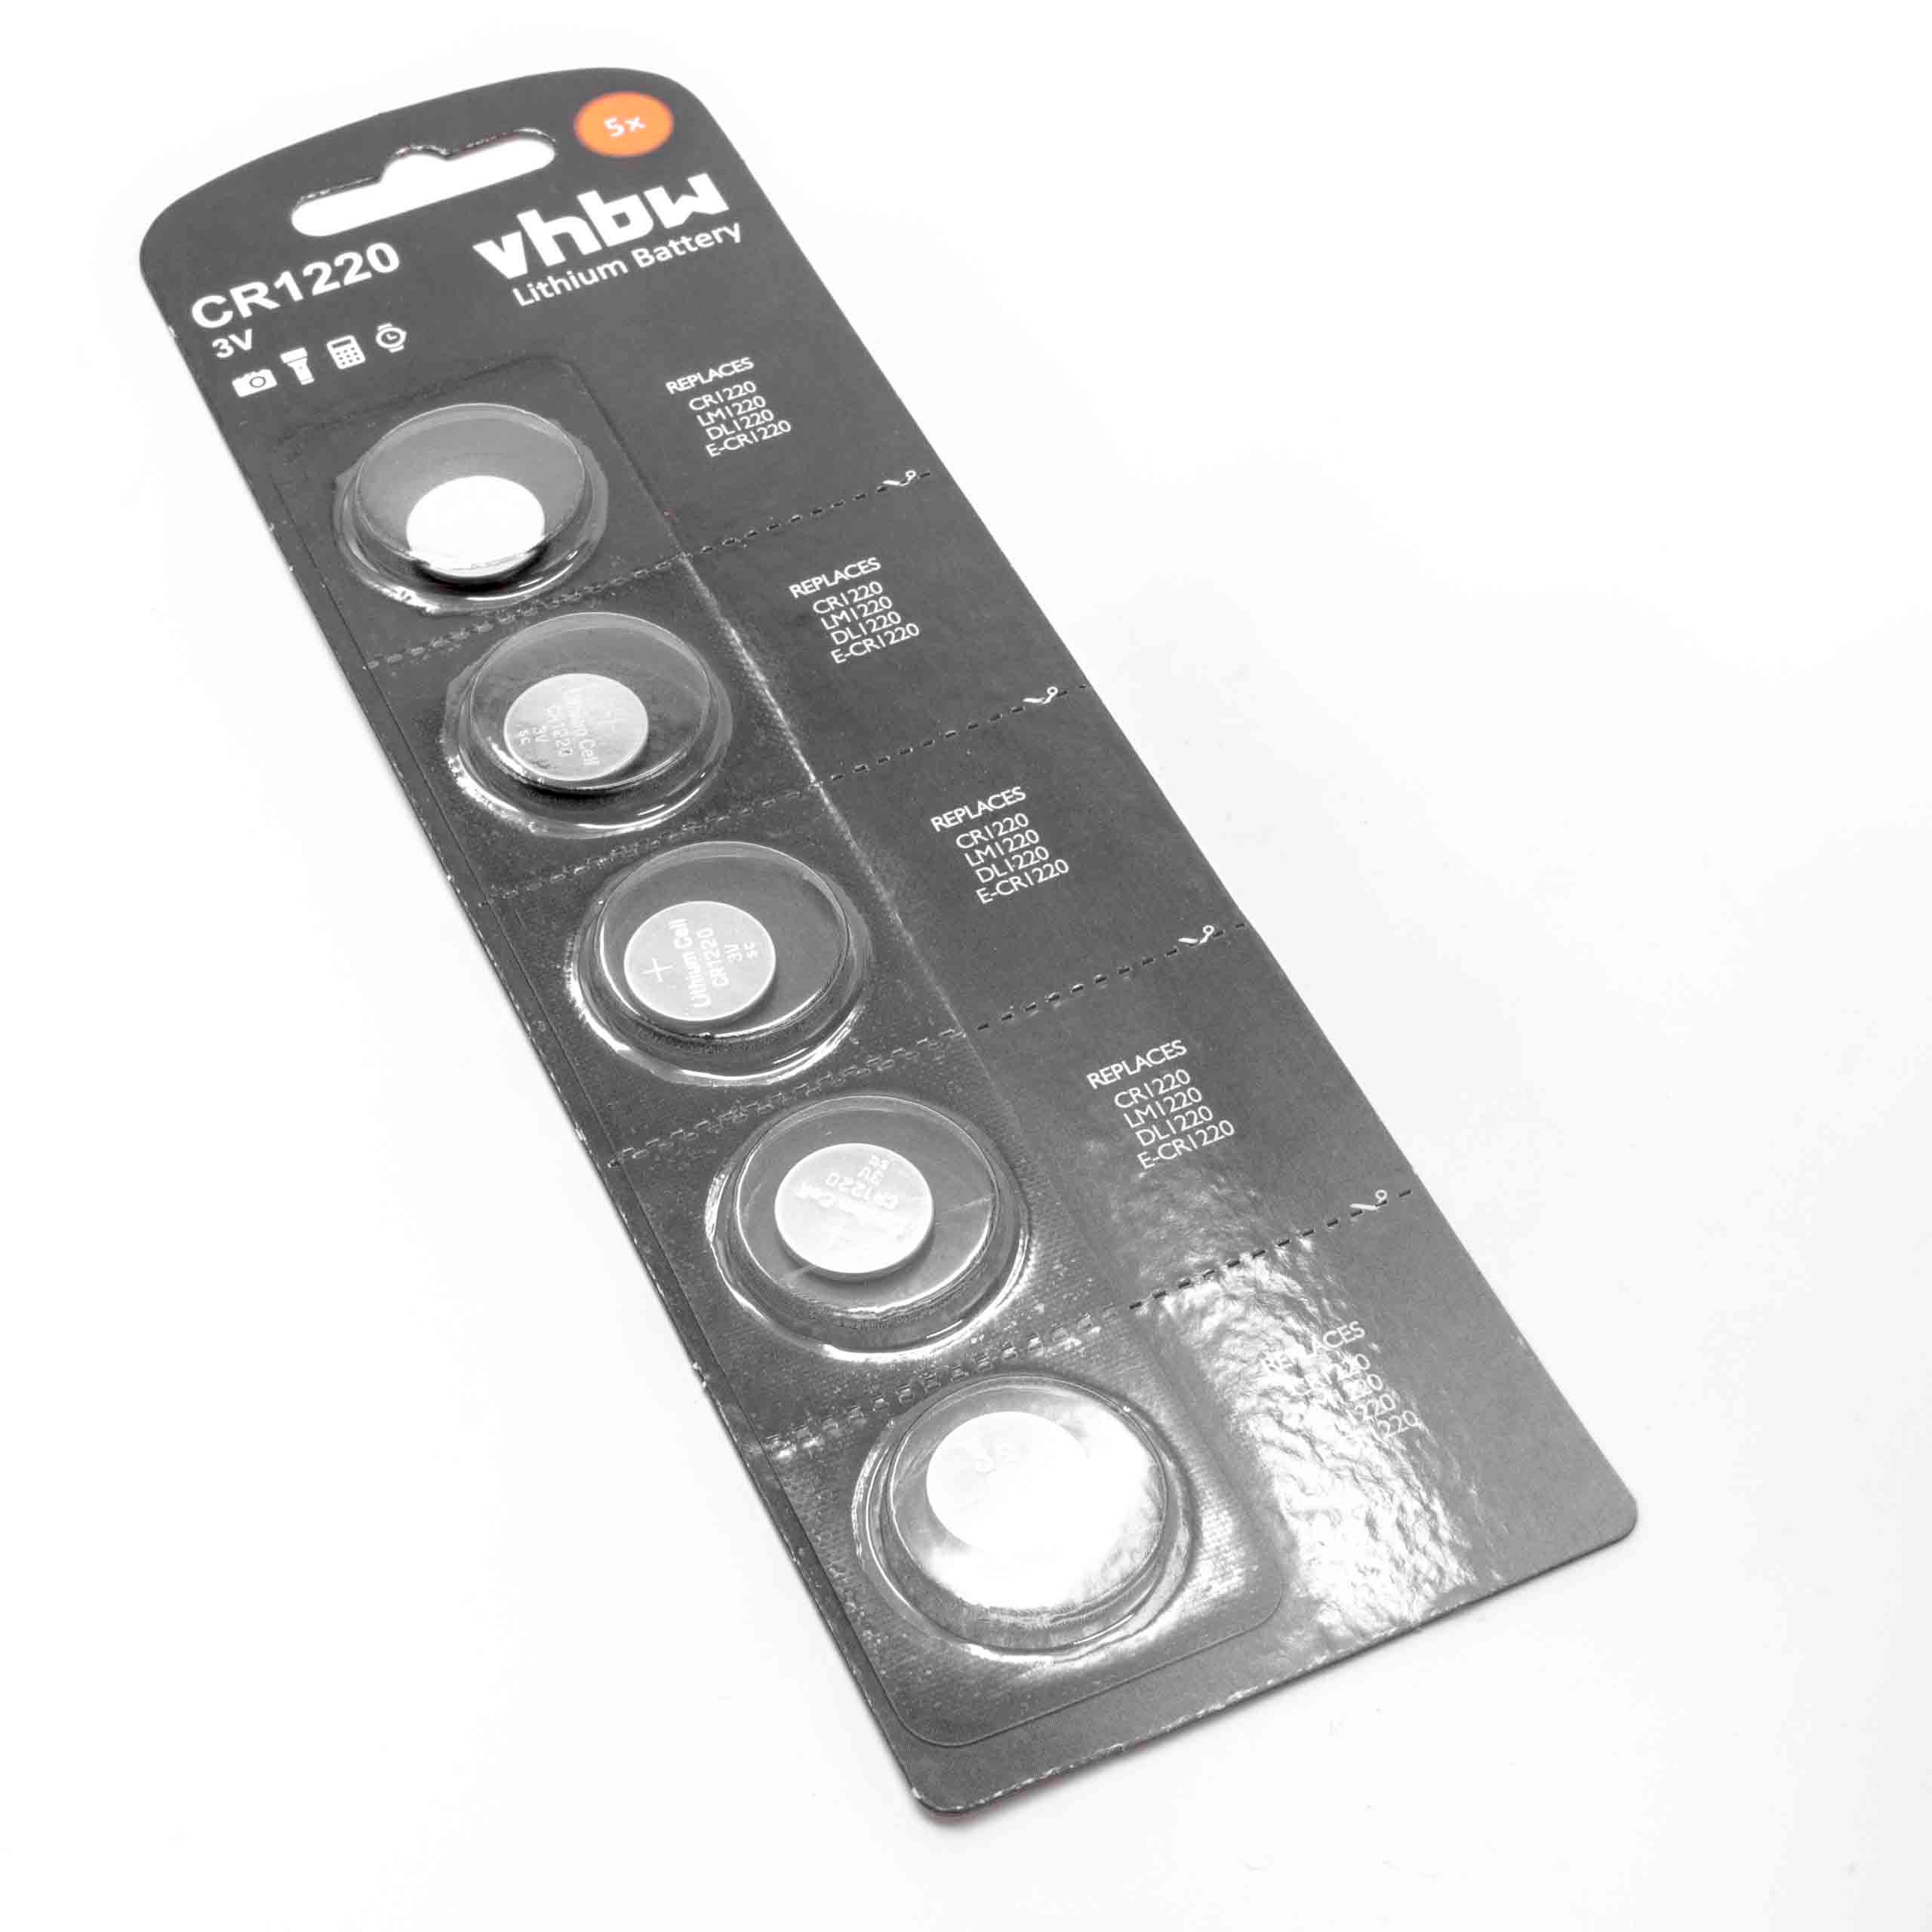 5x Piles boutons CR1220 3V au Li-ion pour appareils auditifs, montres, clés